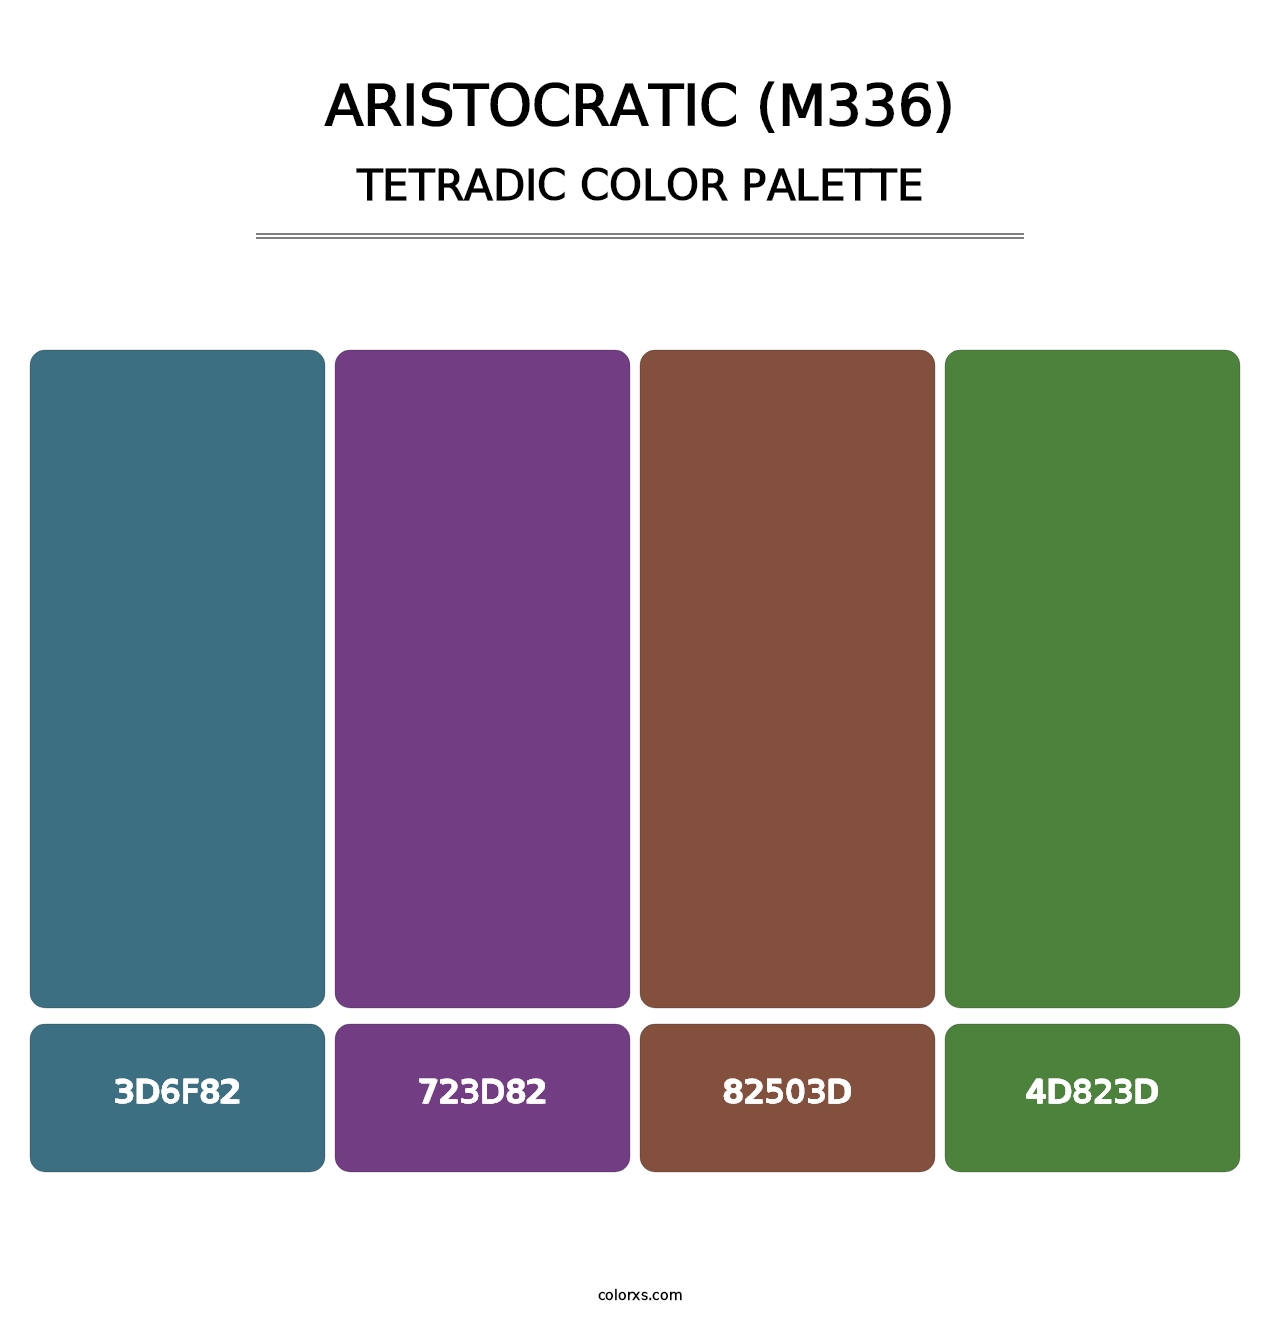 Aristocratic (M336) - Tetradic Color Palette